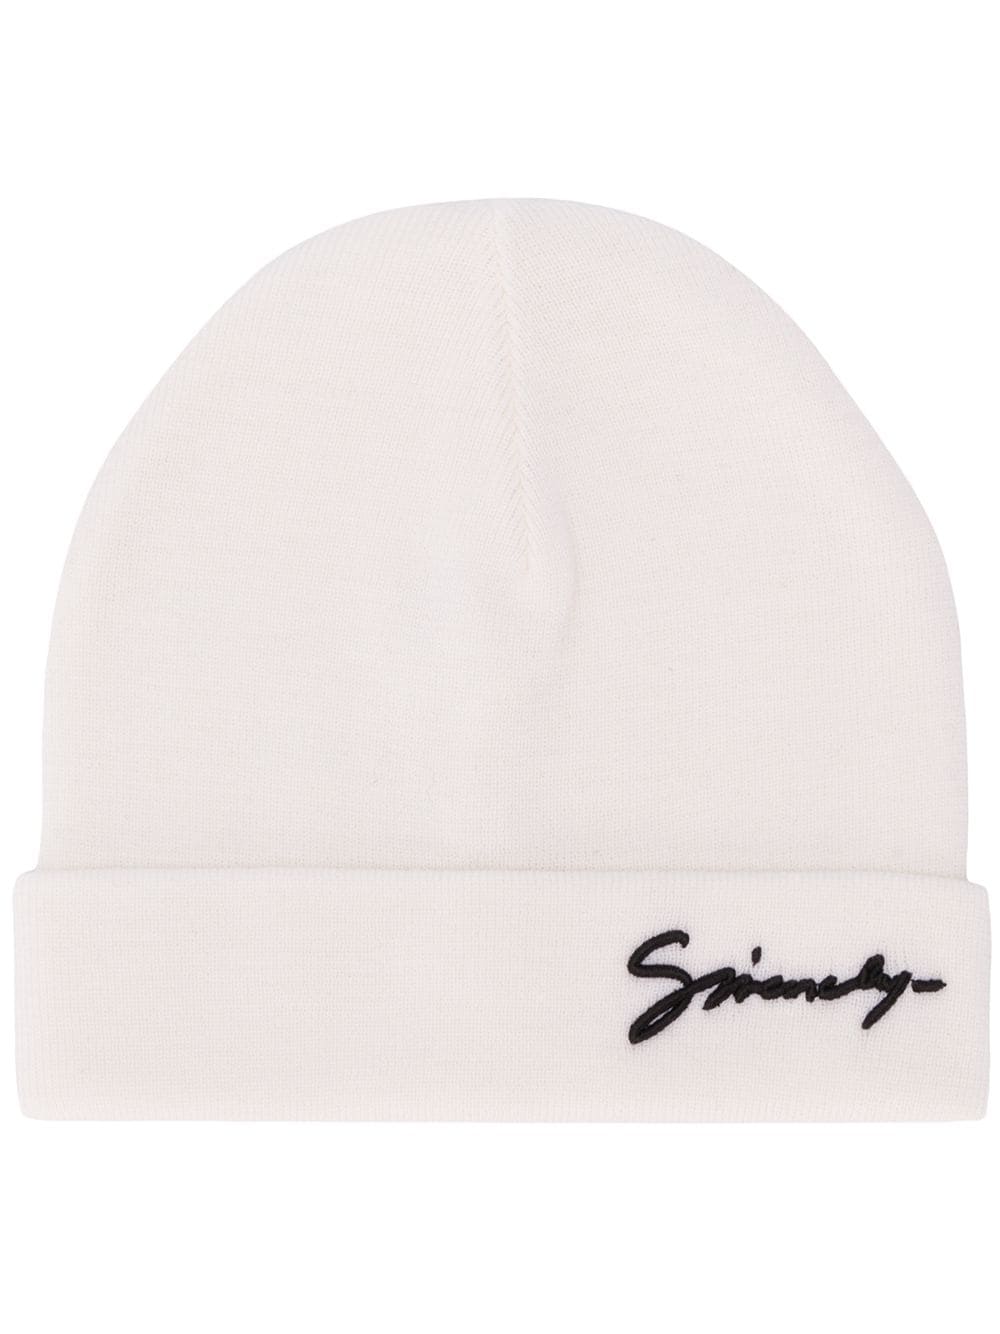 фото Givenchy шапка бини с логотипом